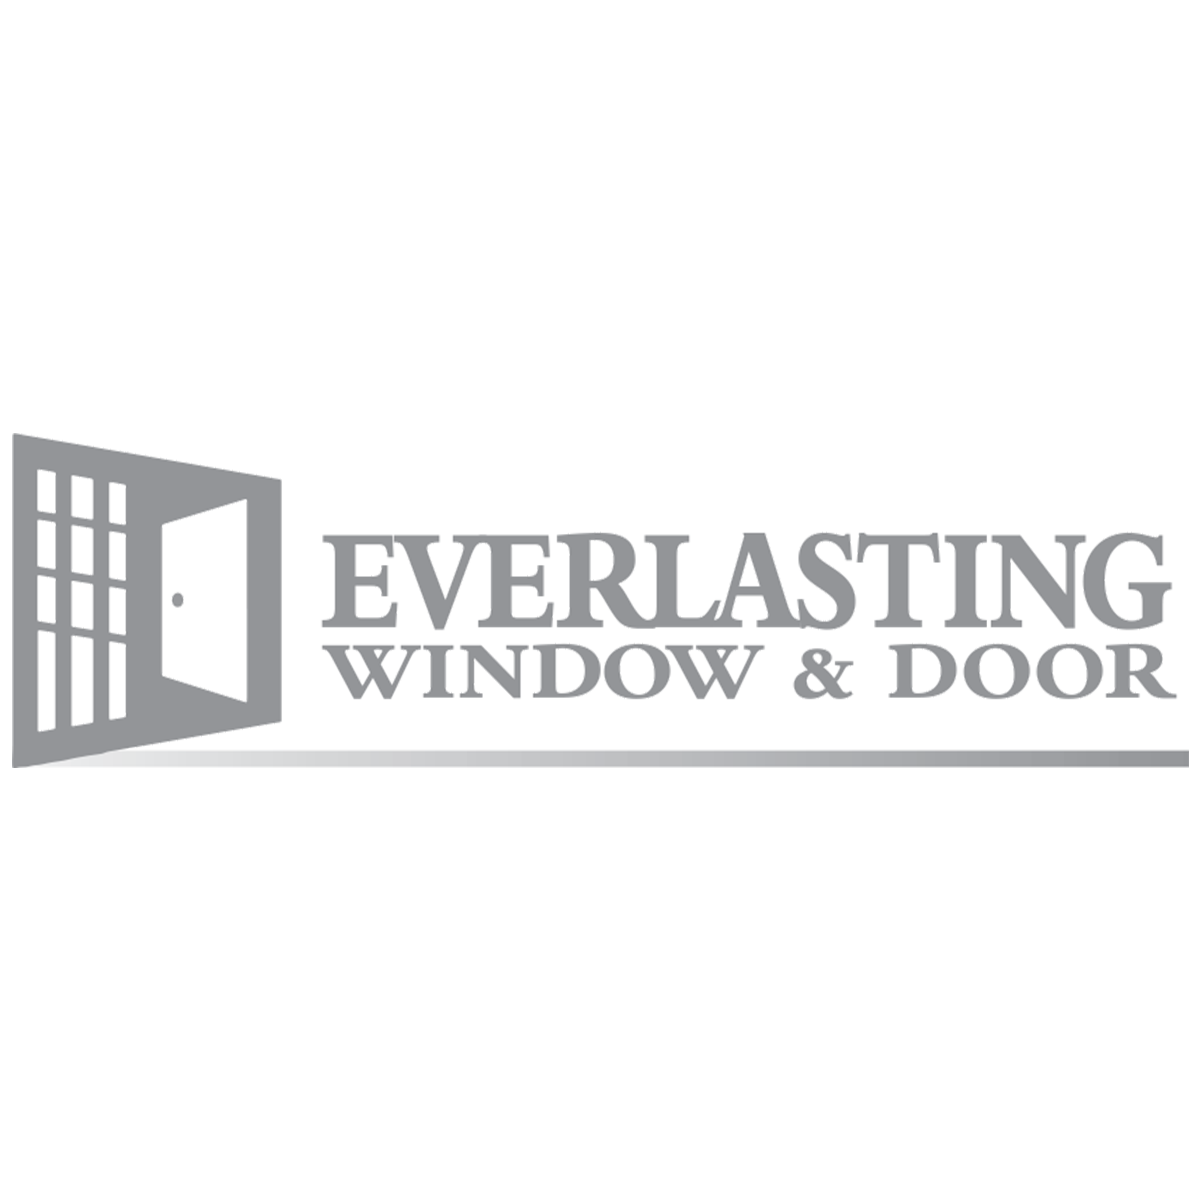 Company logo of Everlasting Window & Door